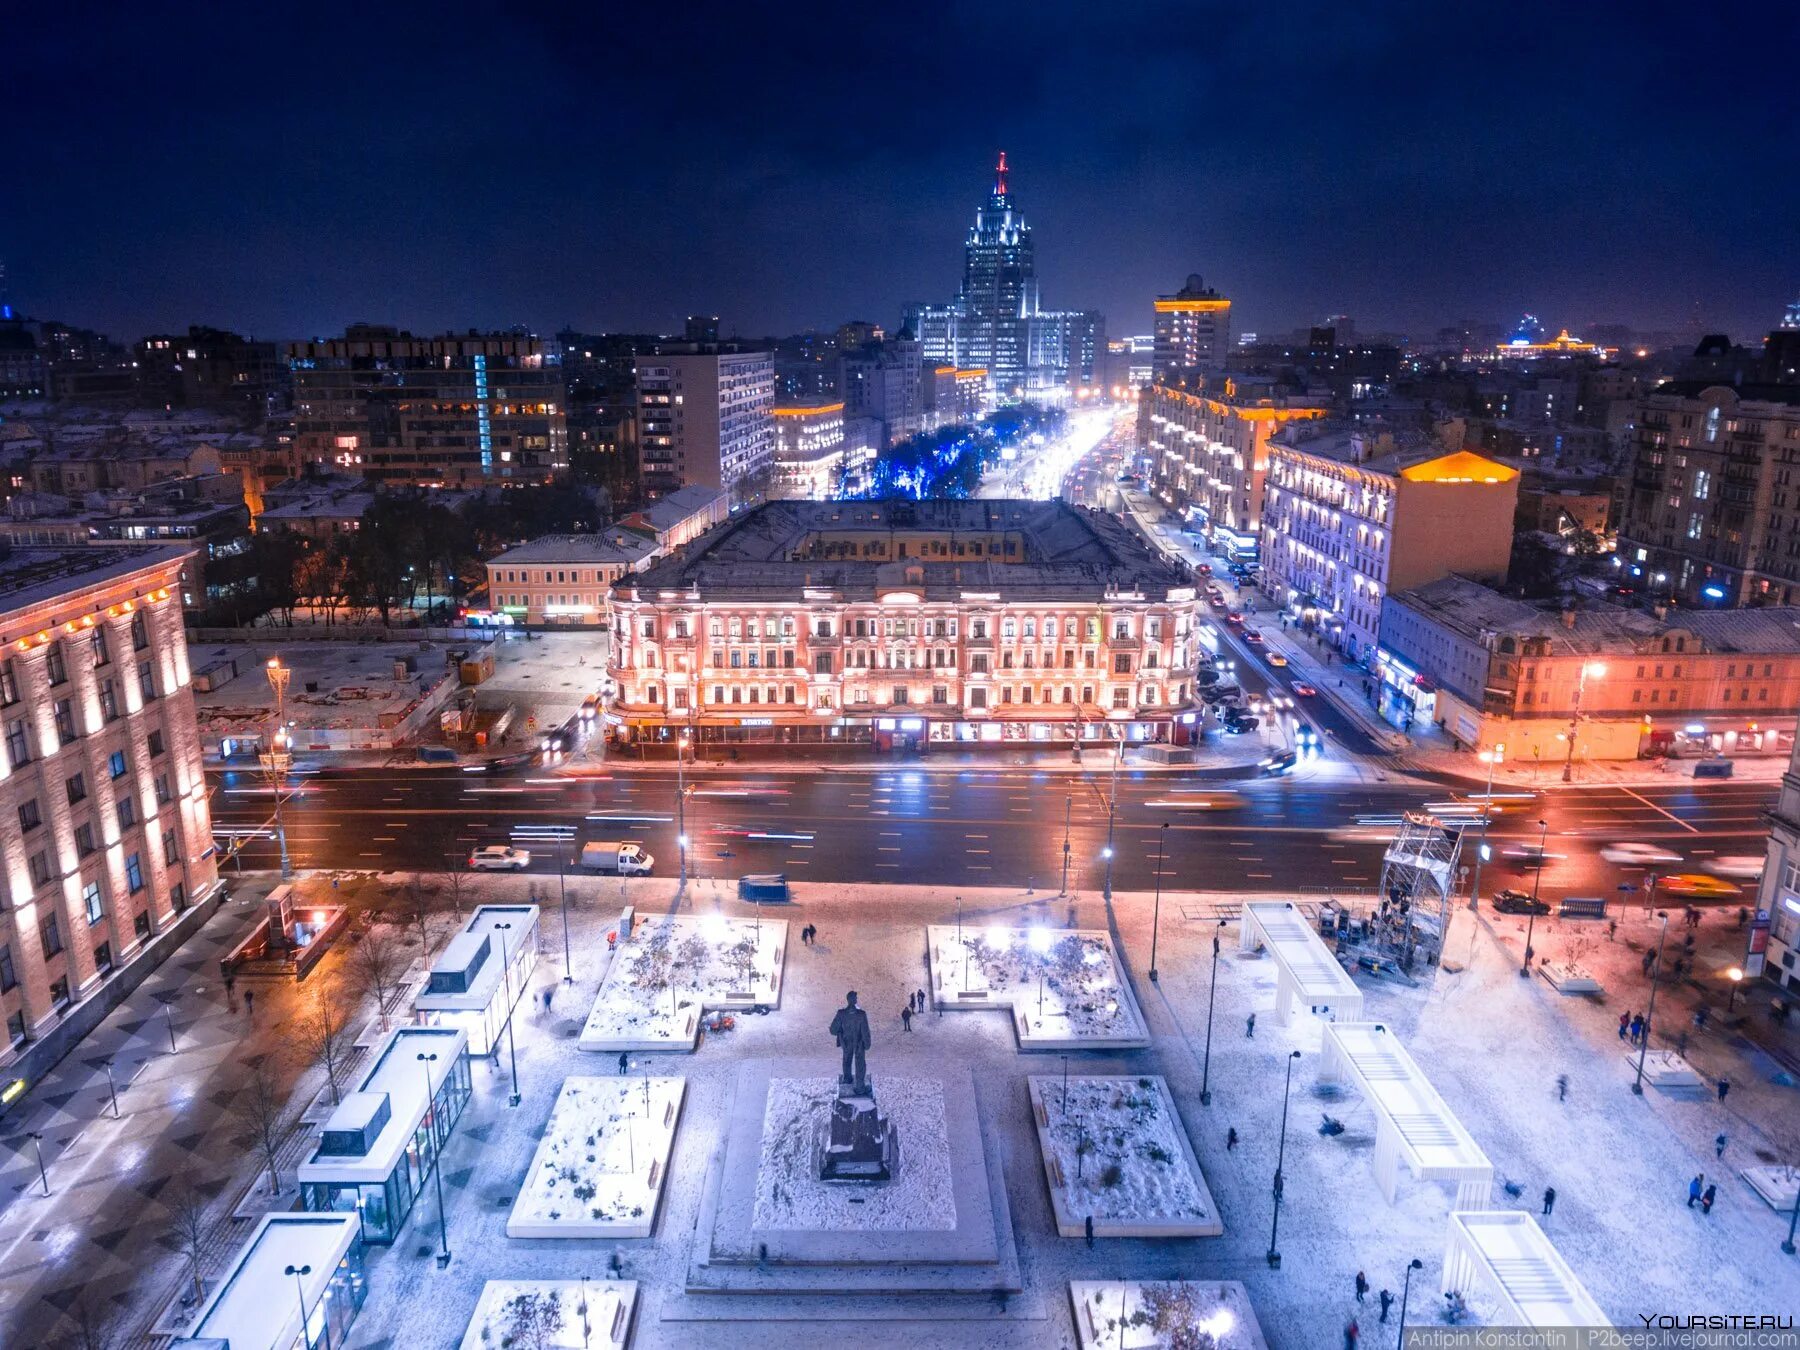 Чувствовать площадь. Триумфальная площадь в Москве. Пушкинская площадь Тверь. Триумфальная площадь ночь. Триумфальная площадь 2000.